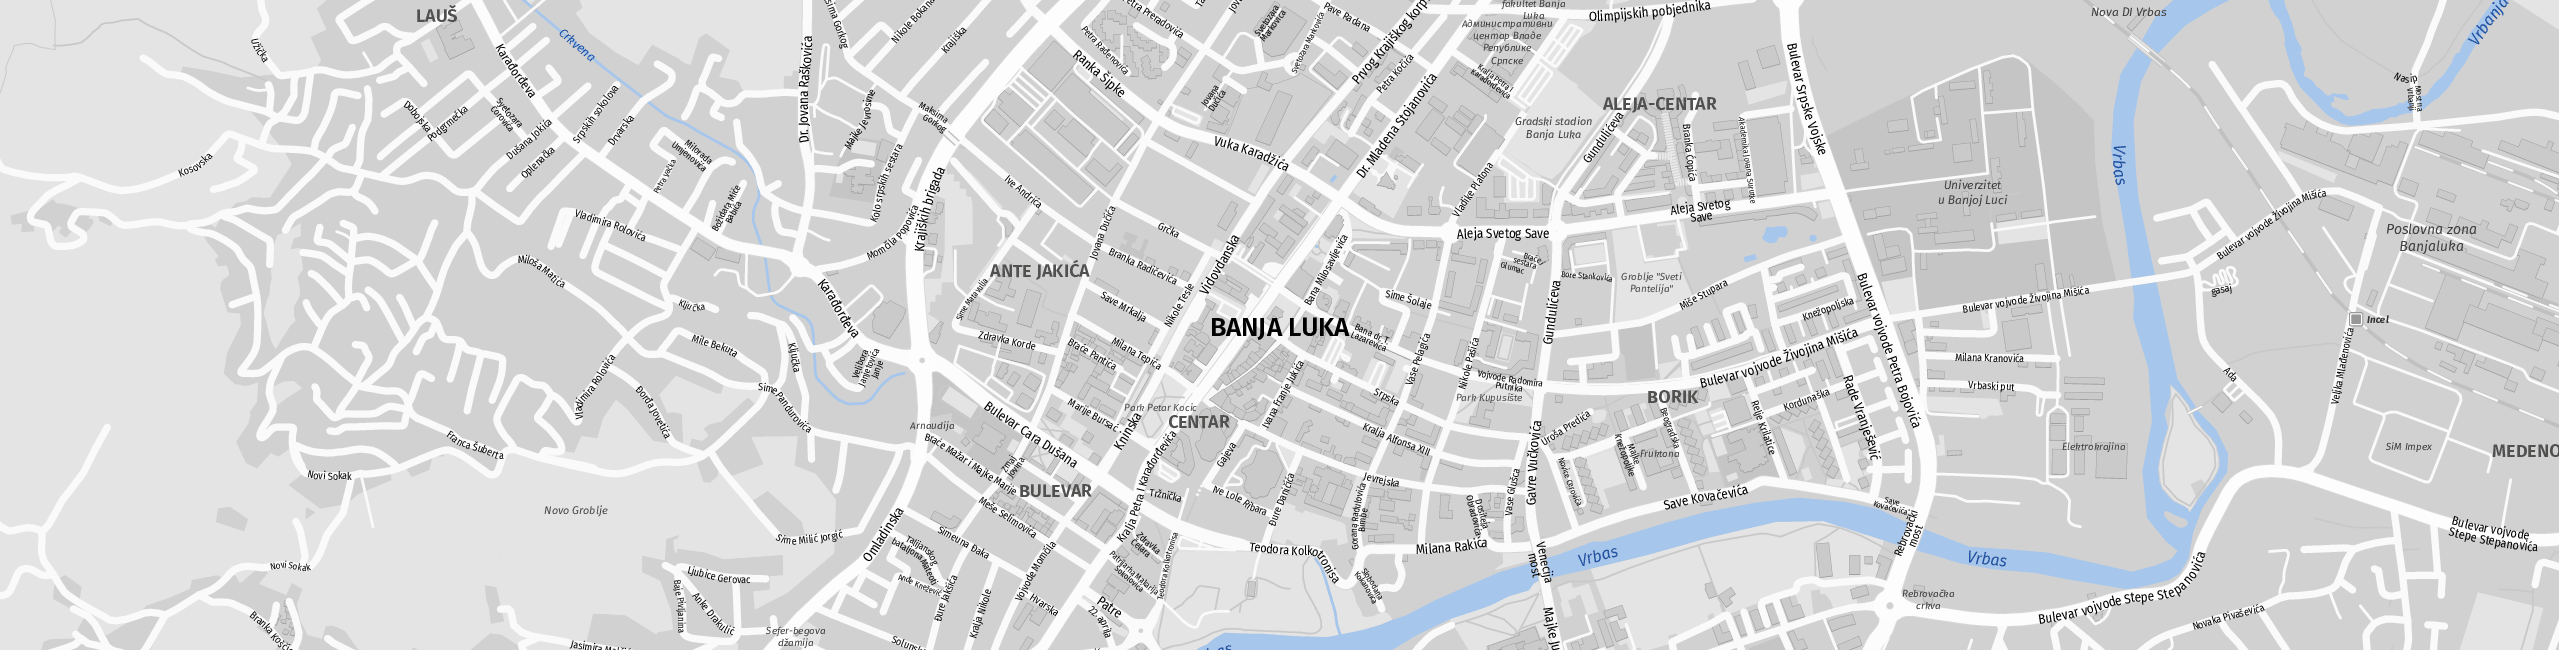 Stadtplan Banja Luka zum Downloaden.